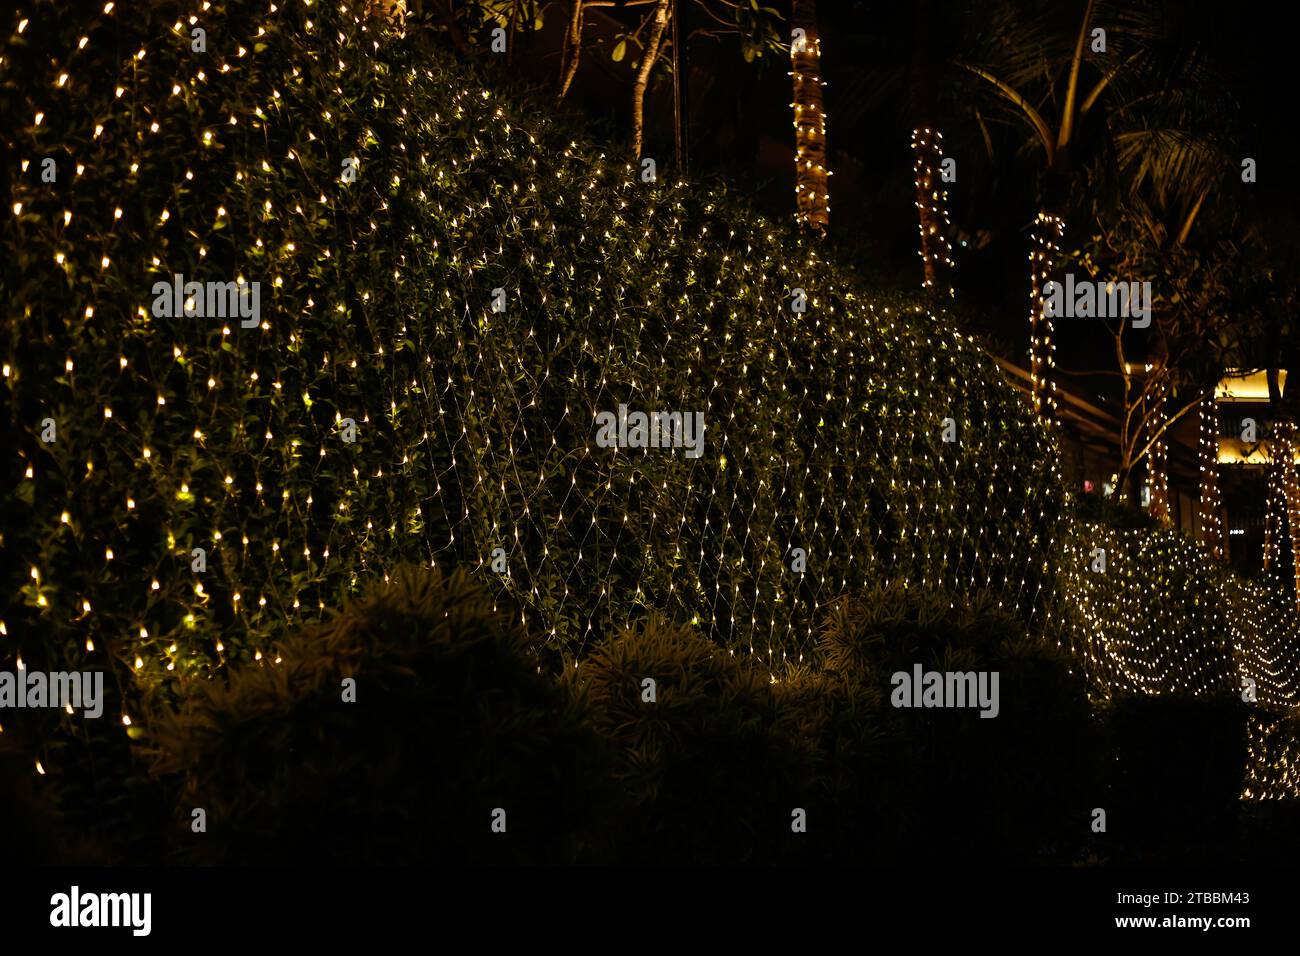 Lumières de Noël dorées douces dans un arbuste vert avec de la neige épaisse couvrant le sol pendant la nuit Banque D'Images